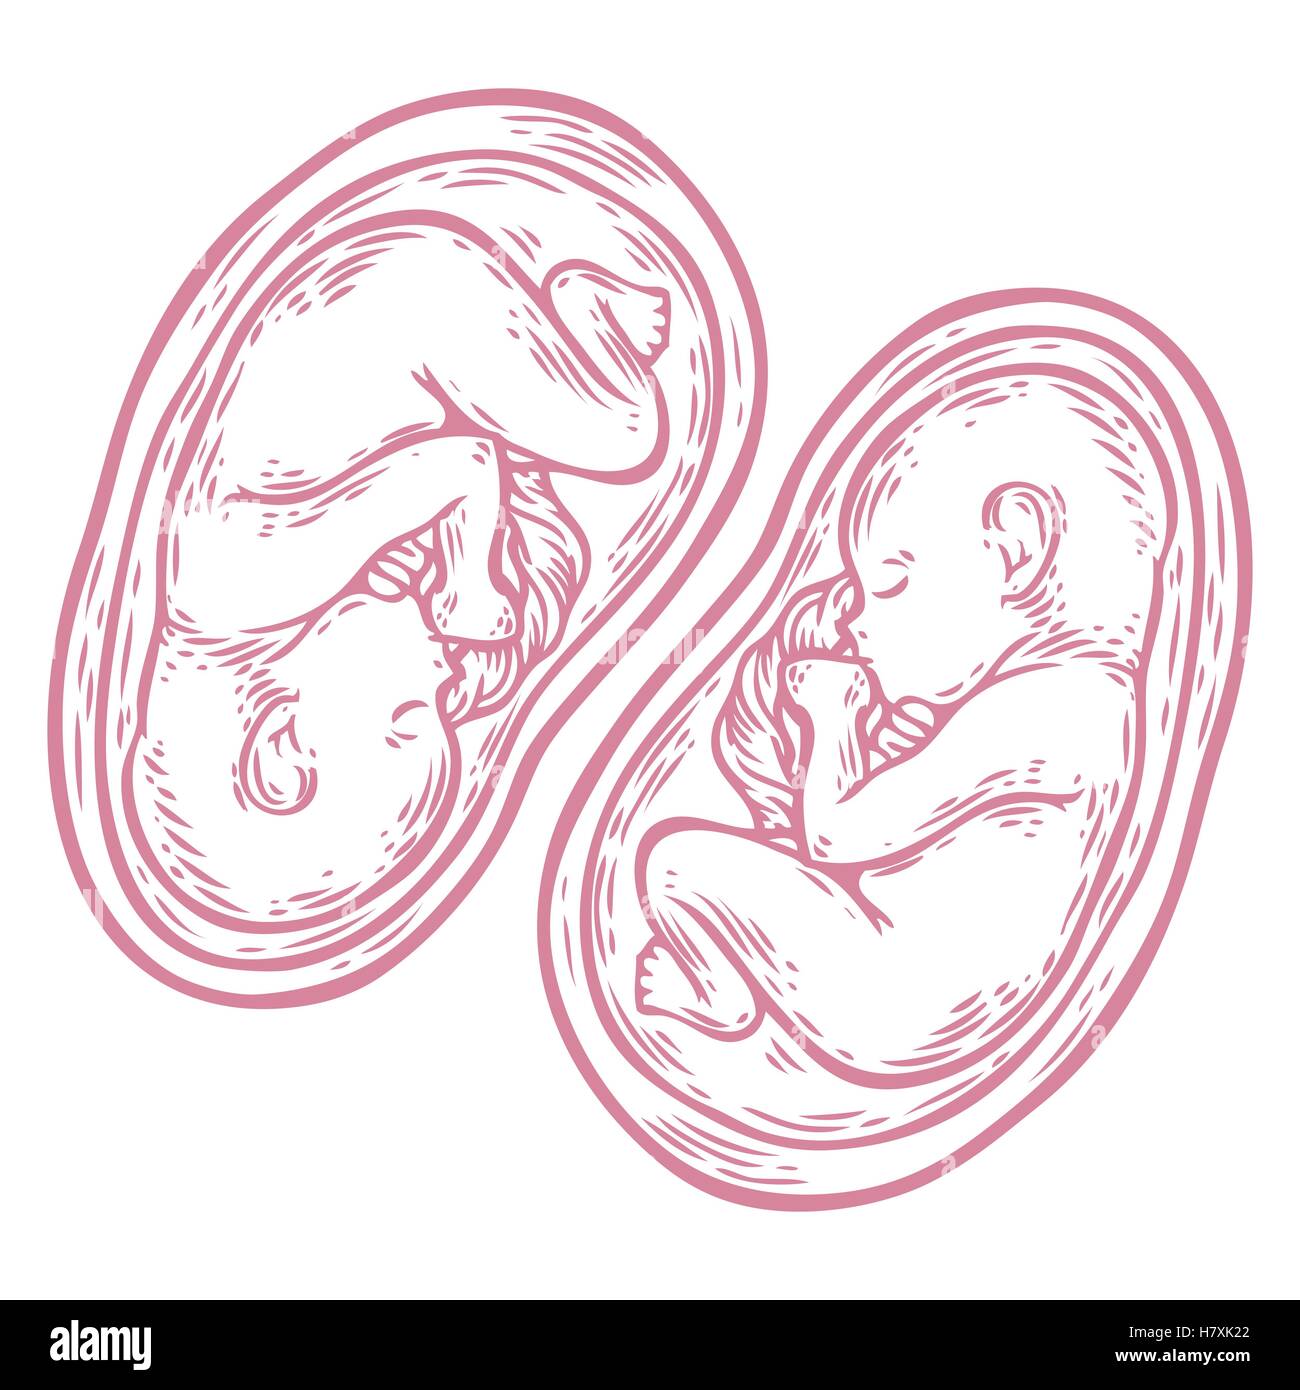 Les jumeaux foetus concept hand drawn vector illustration bébé en croissance prénatale, umbilicle épinière isolé sur un fond blanc. Illustration de Vecteur